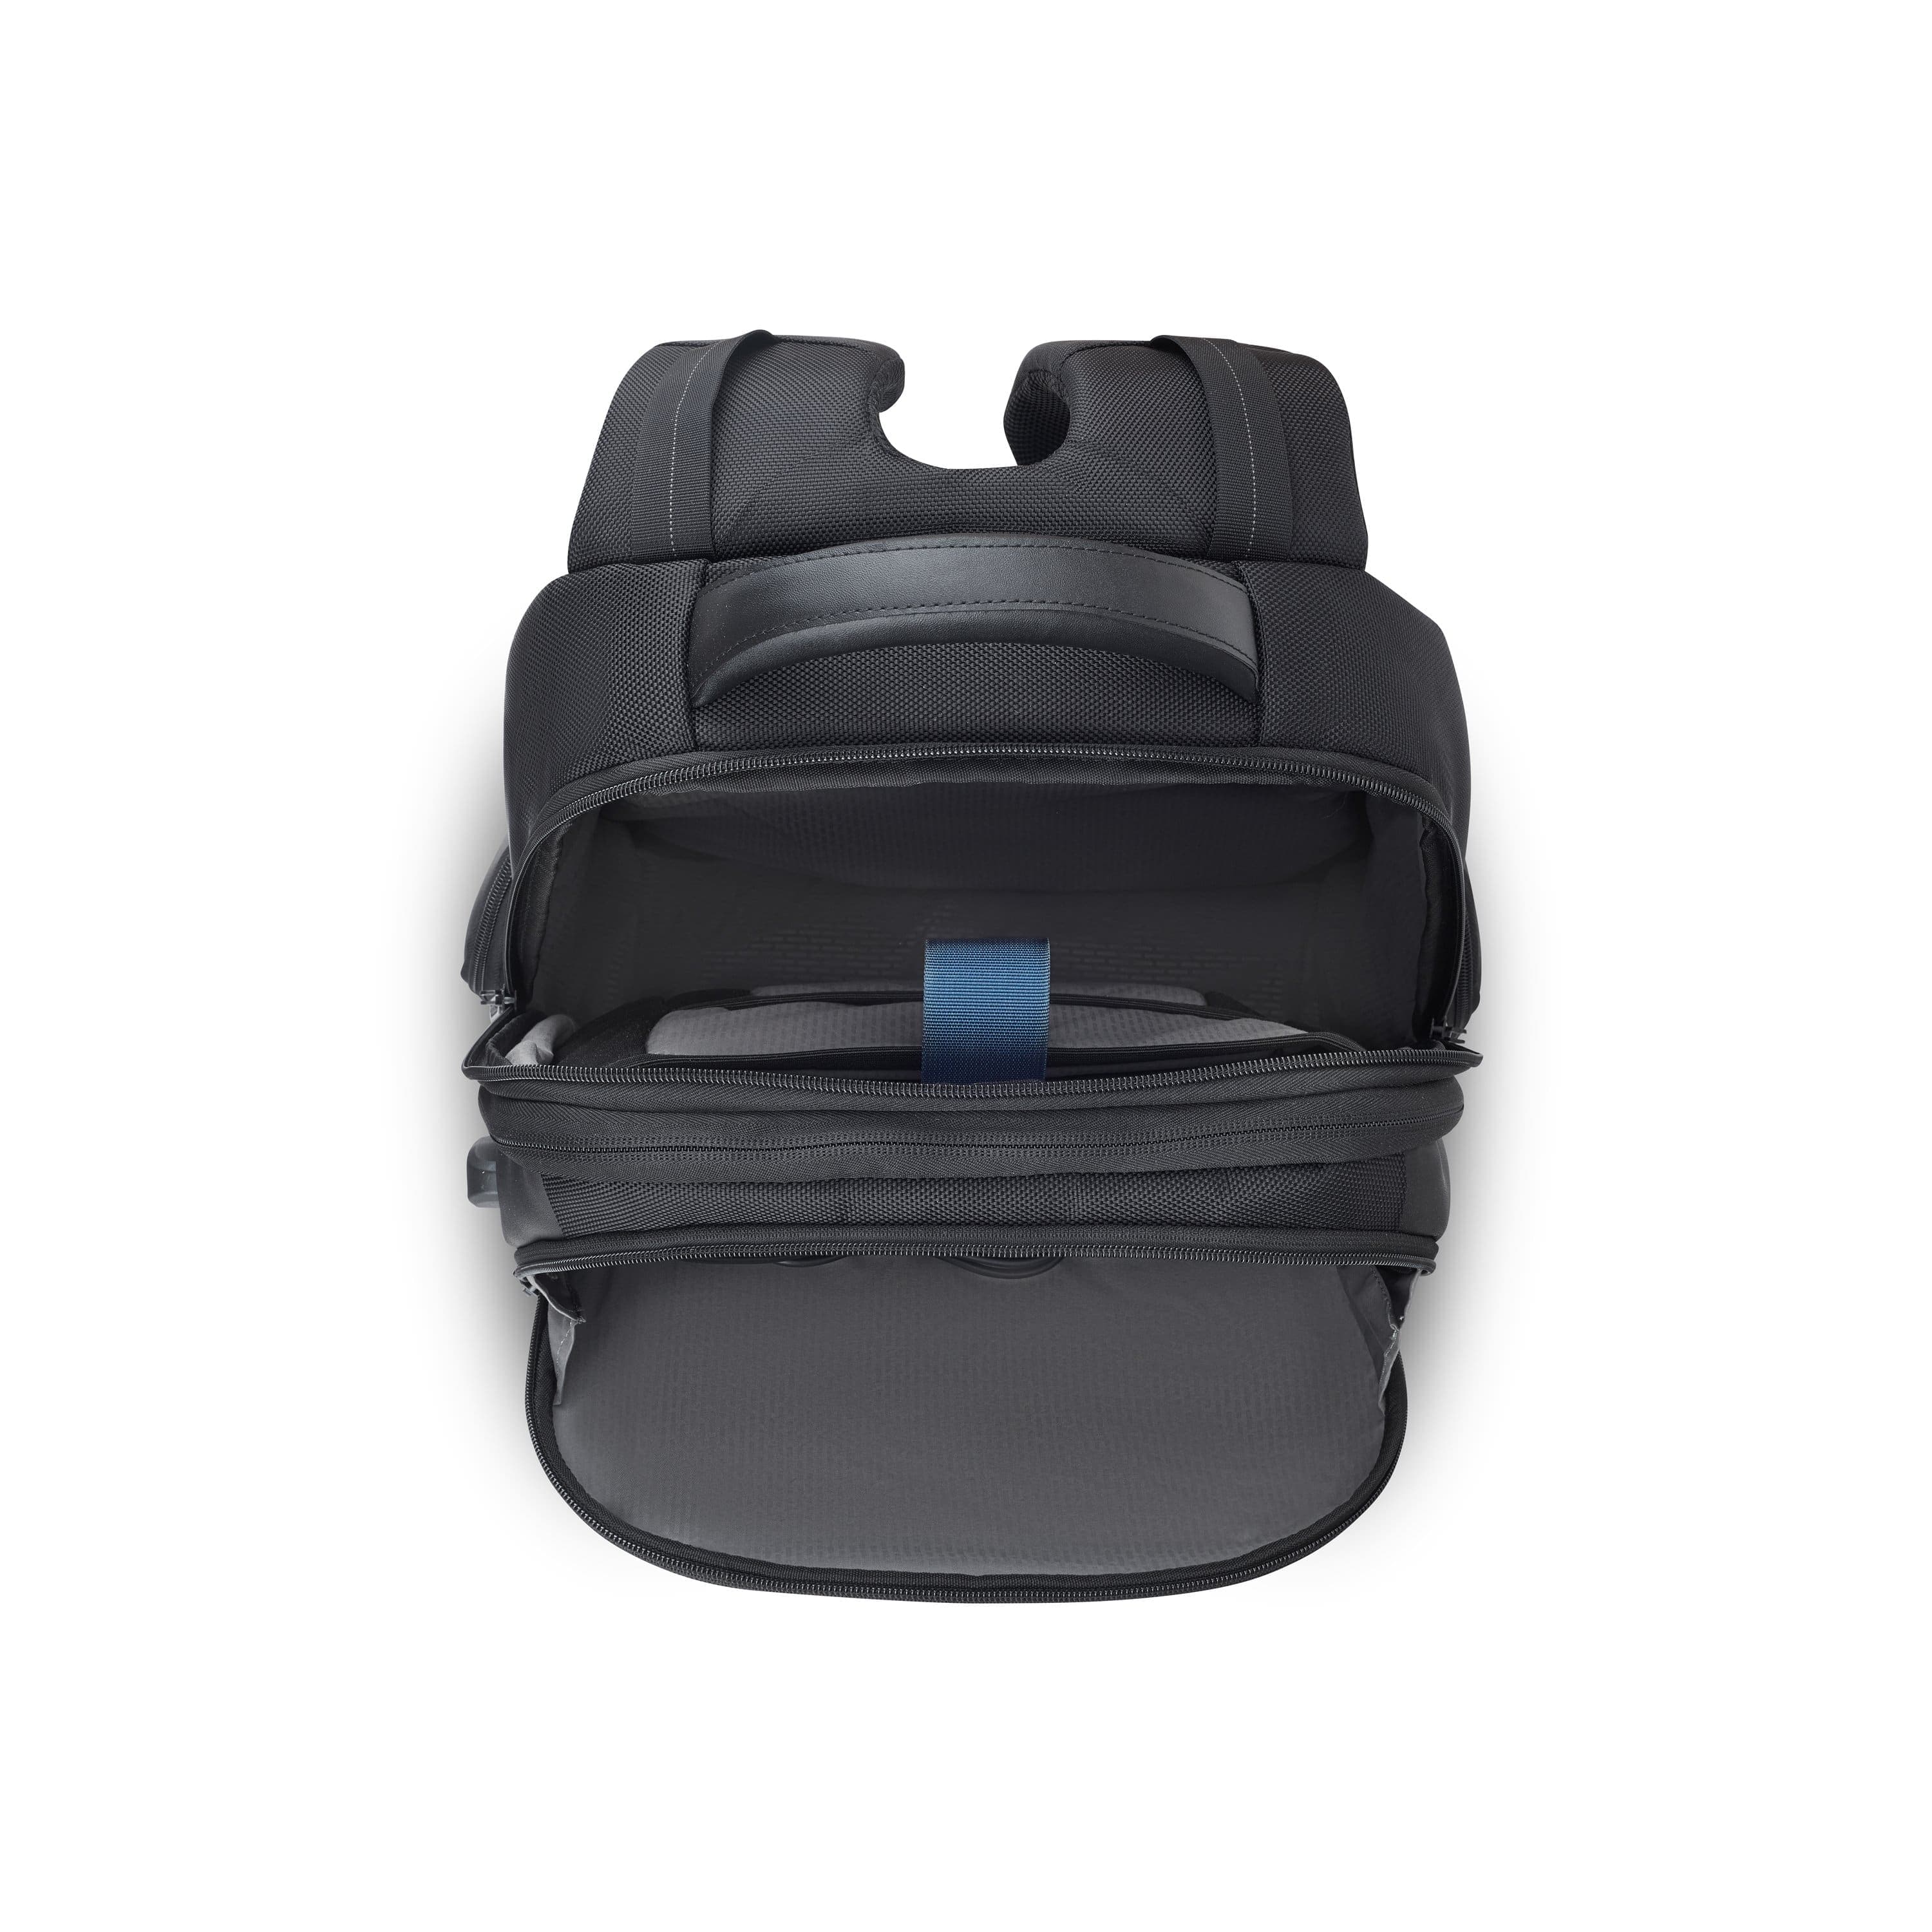 Delsey Quarter Prem 15.6" Laptop Protection Backpack Black - 00119860400